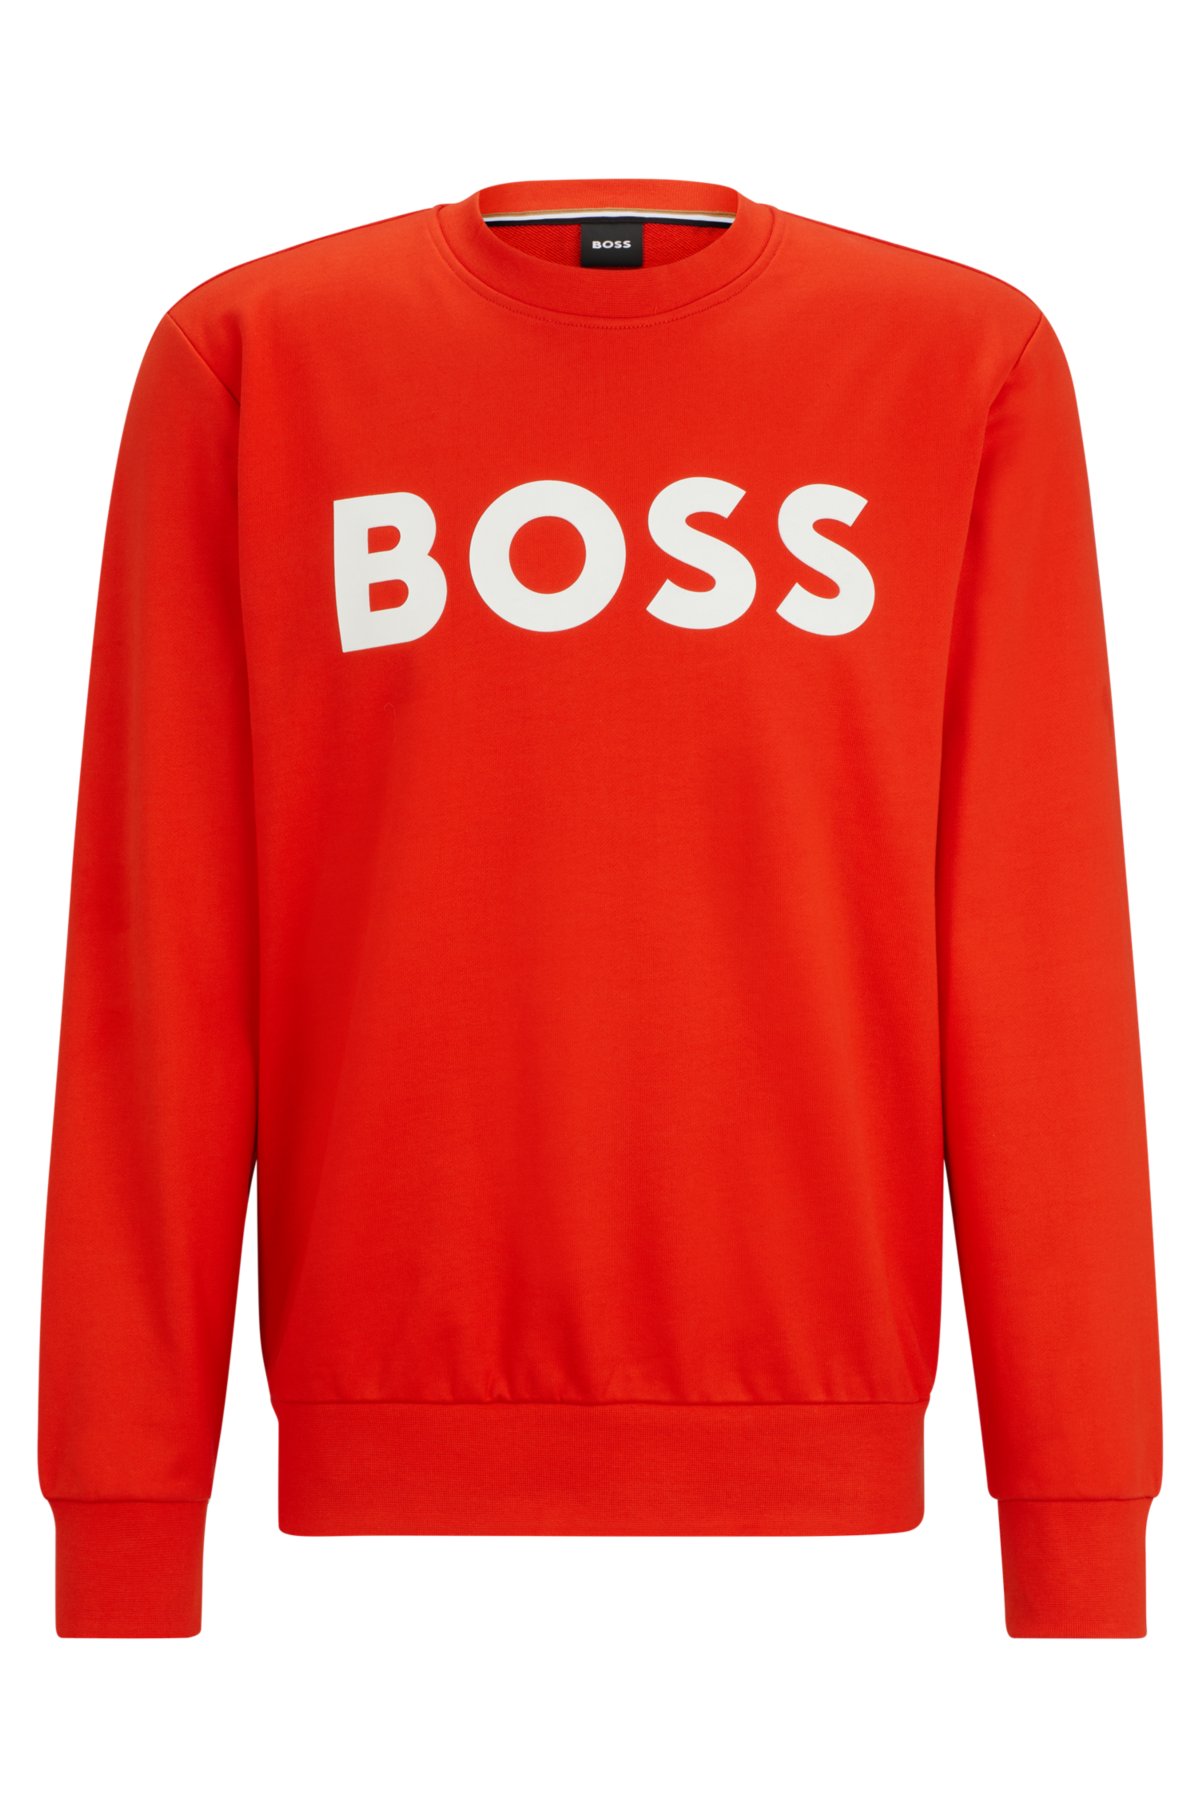 BOSS - sweatshirt with